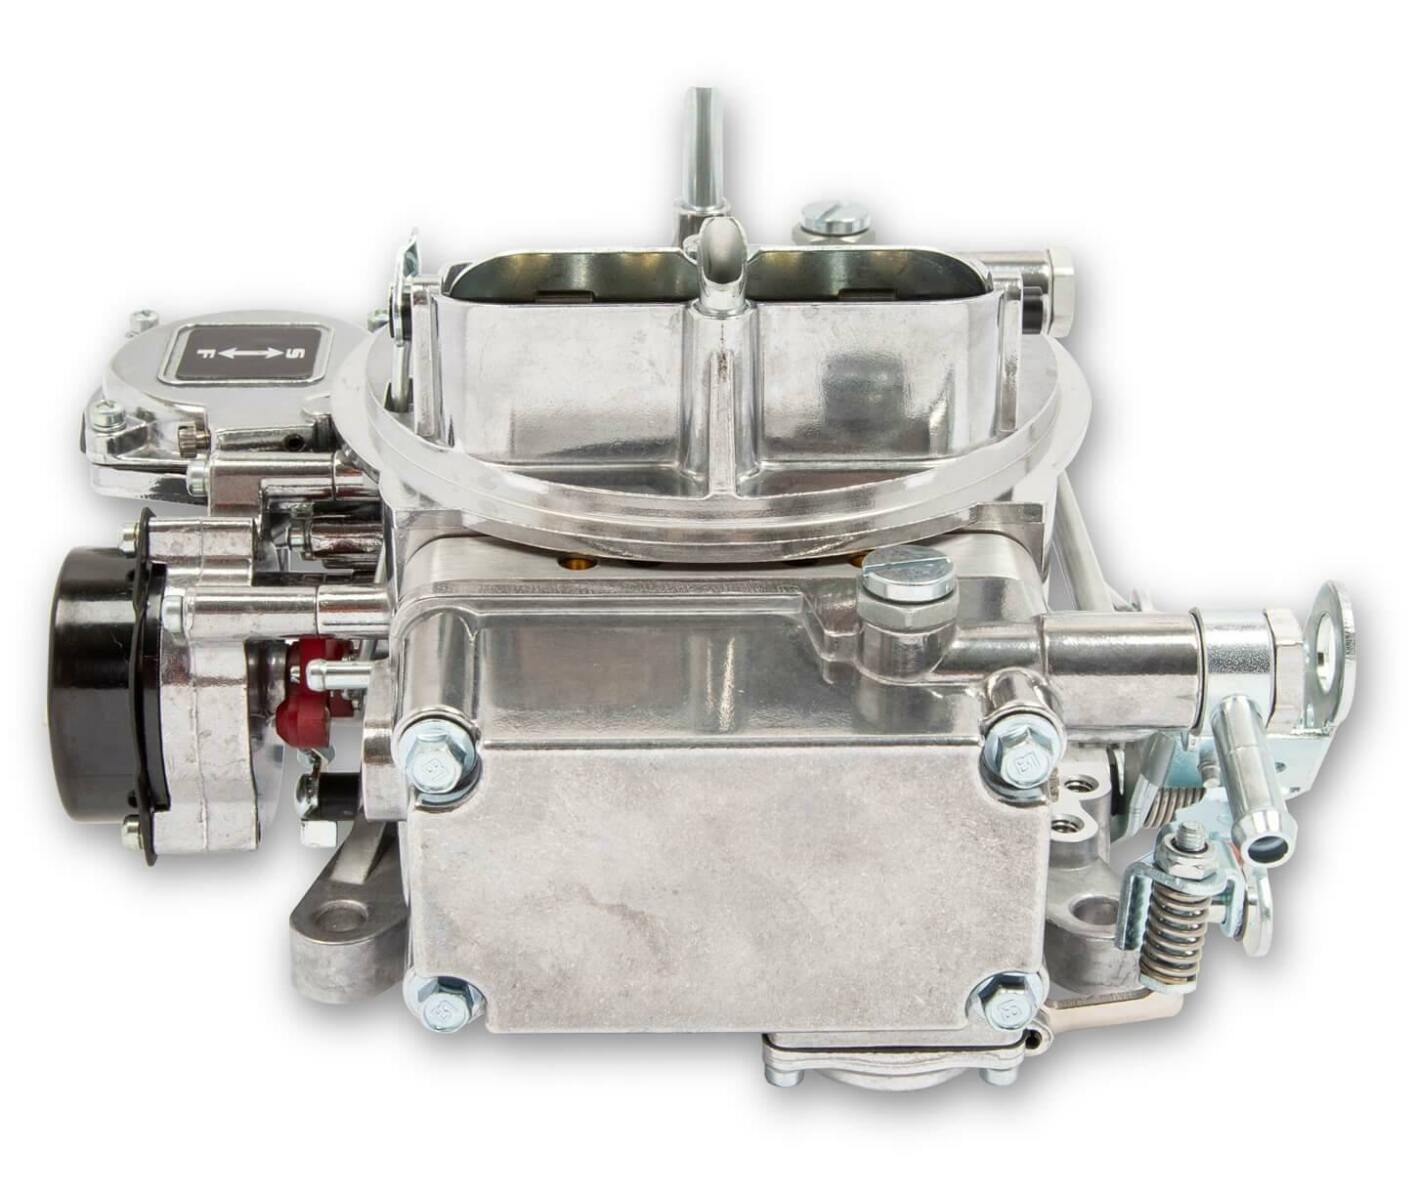 Quick Fuel Carburetor BR-67270; Brawler Die-Cast 600 cfm 4bbl Vacuum Secondary